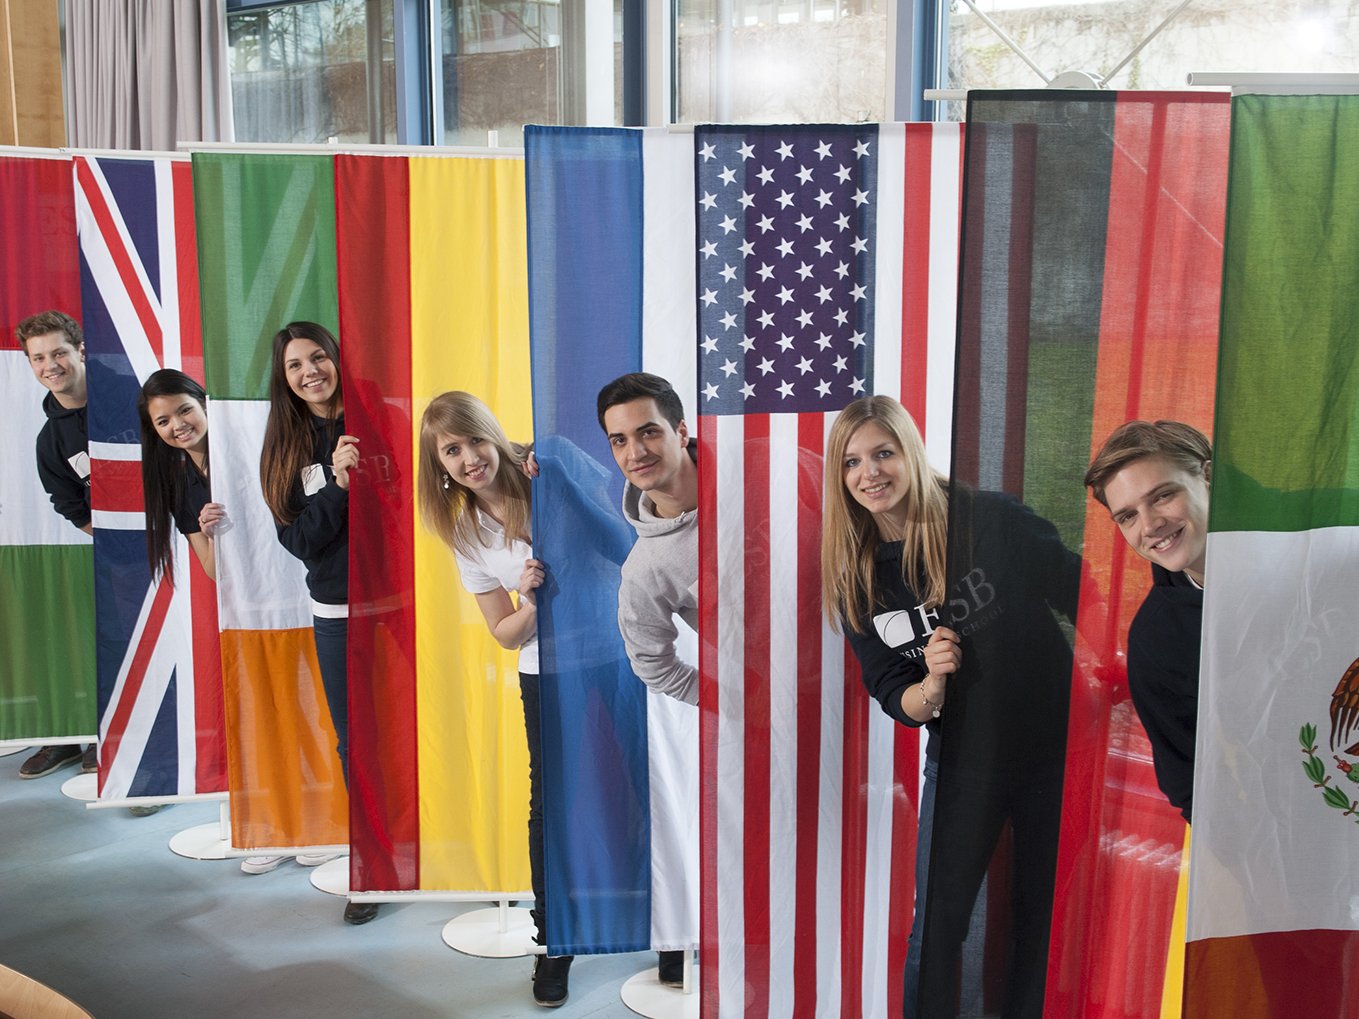 Studierende posieren hinter den Flaggen der Länder der Partneruniversitäten der ESB Business School